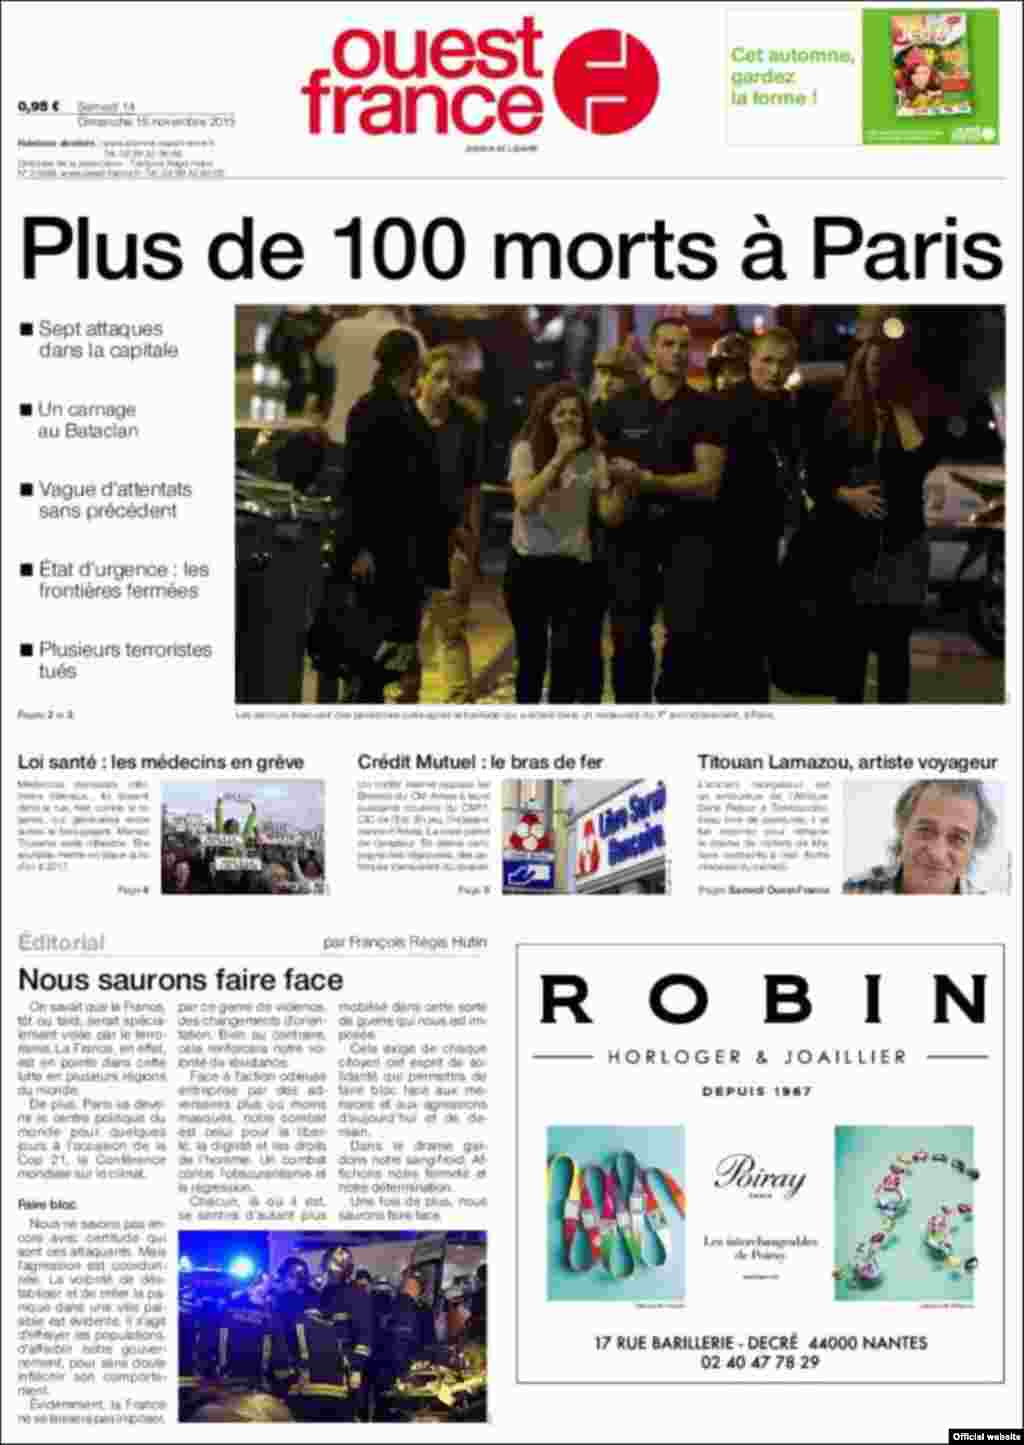 بیش از صد کشته در پاریس